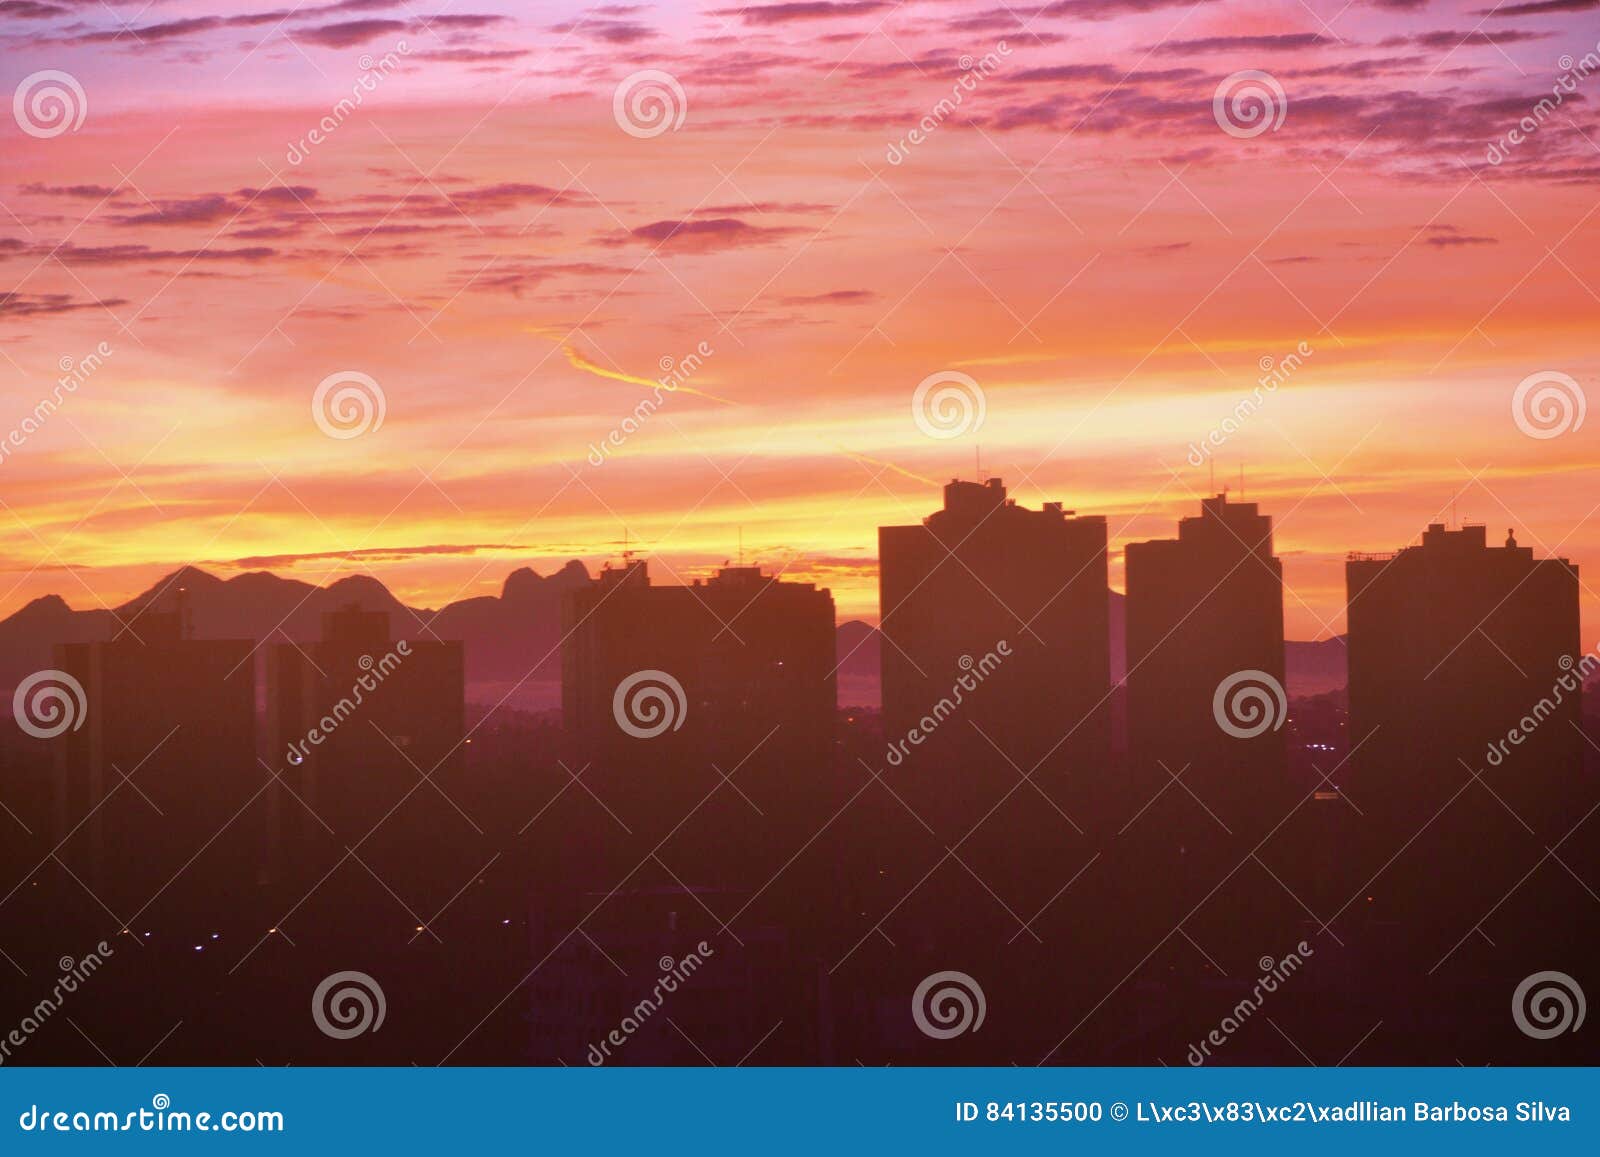 189 Silhouette Brasil Skyline Stock Photos - Free & Royalty-Free